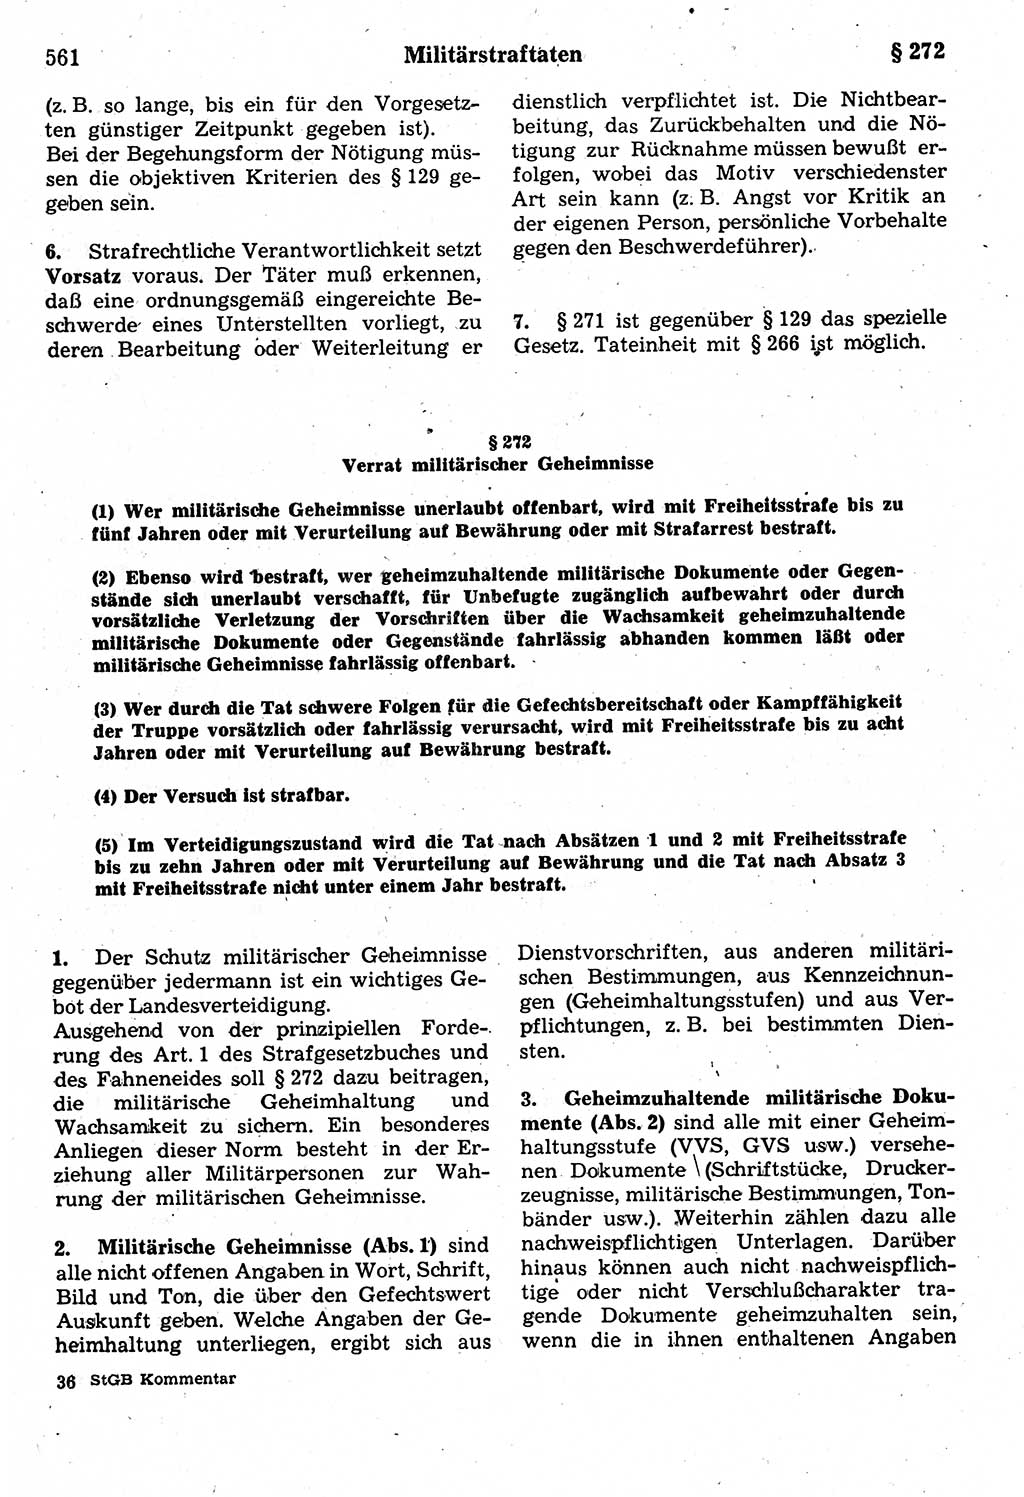 Strafrecht der Deutschen Demokratischen Republik (DDR), Kommentar zum Strafgesetzbuch (StGB) 1987, Seite 561 (Strafr. DDR Komm. StGB 1987, S. 561)